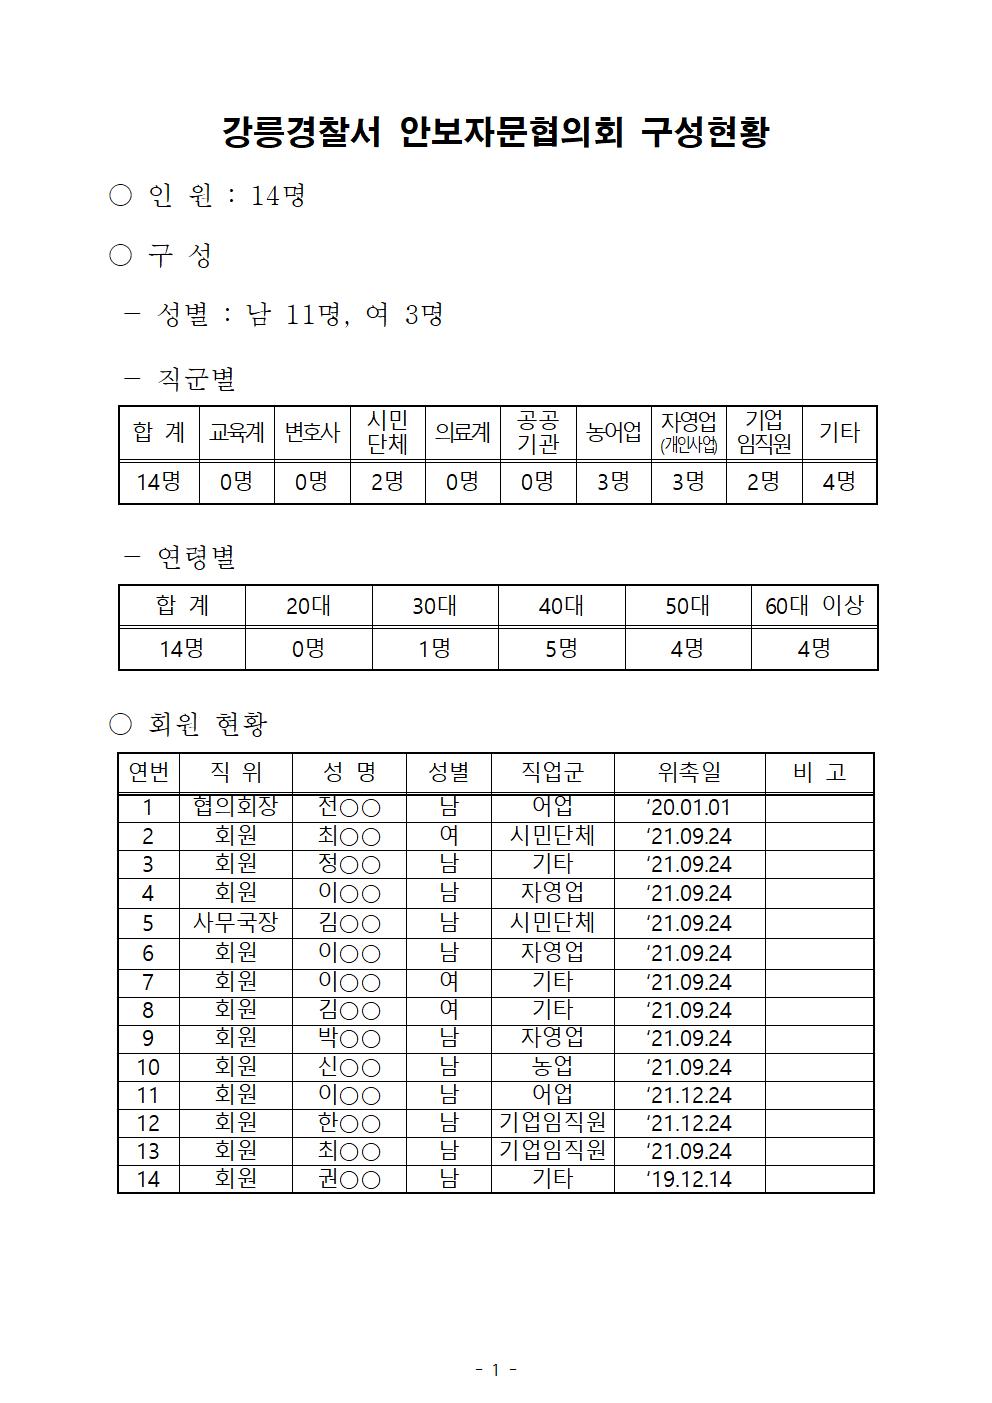 강릉경찰서 안보자문협의회 구성현황(수정)-강릉서 안보자문협의회 현황(12.24))001